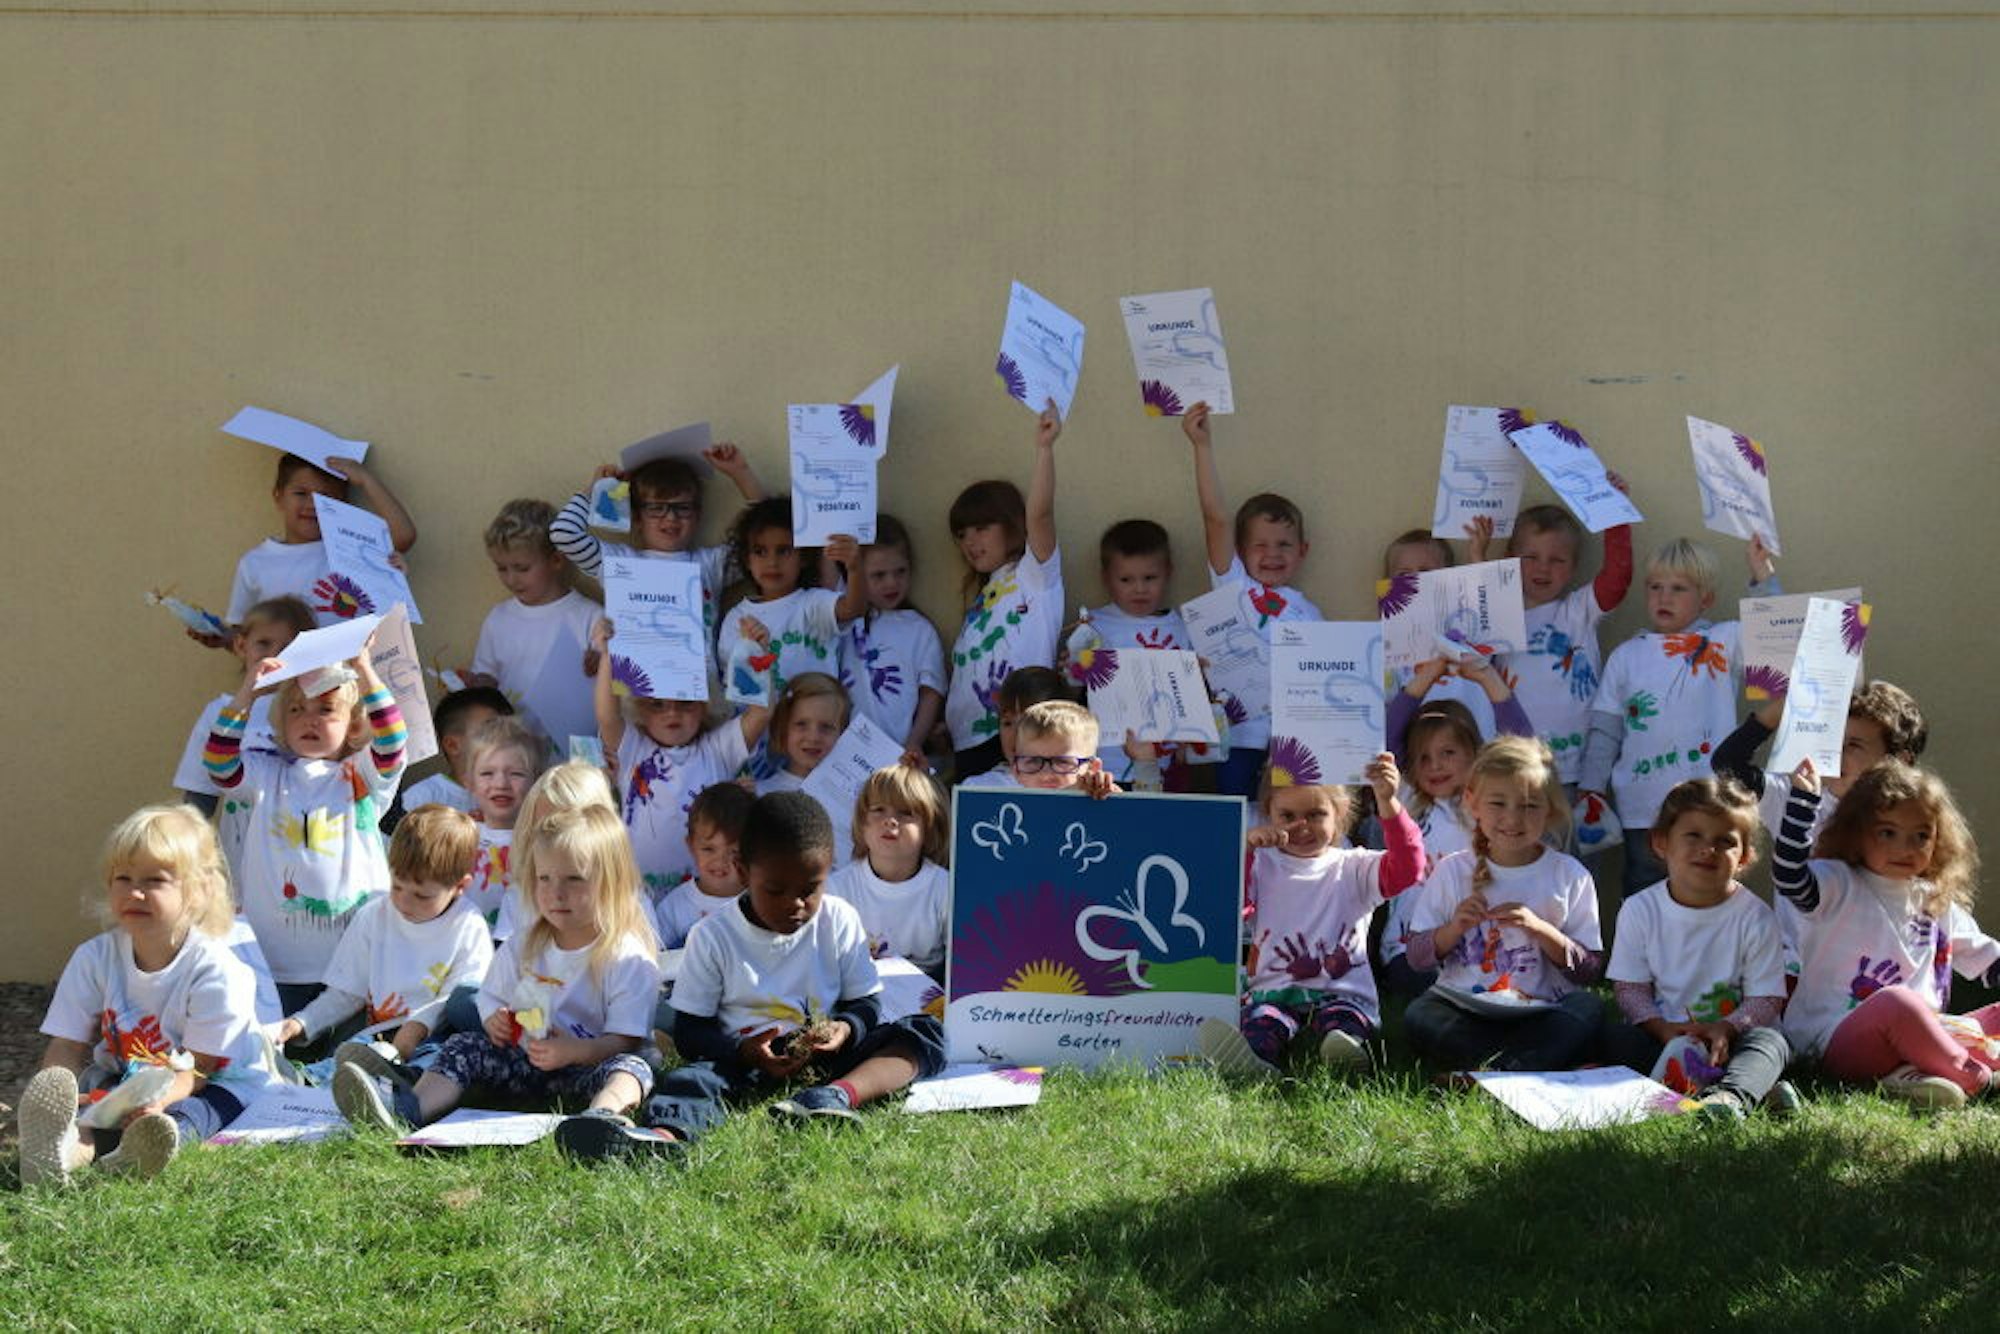 Jedes Kind bekam eine Urkunde als Anerkennung für seine Mitwirkung im Schmetterlingsprojekt.